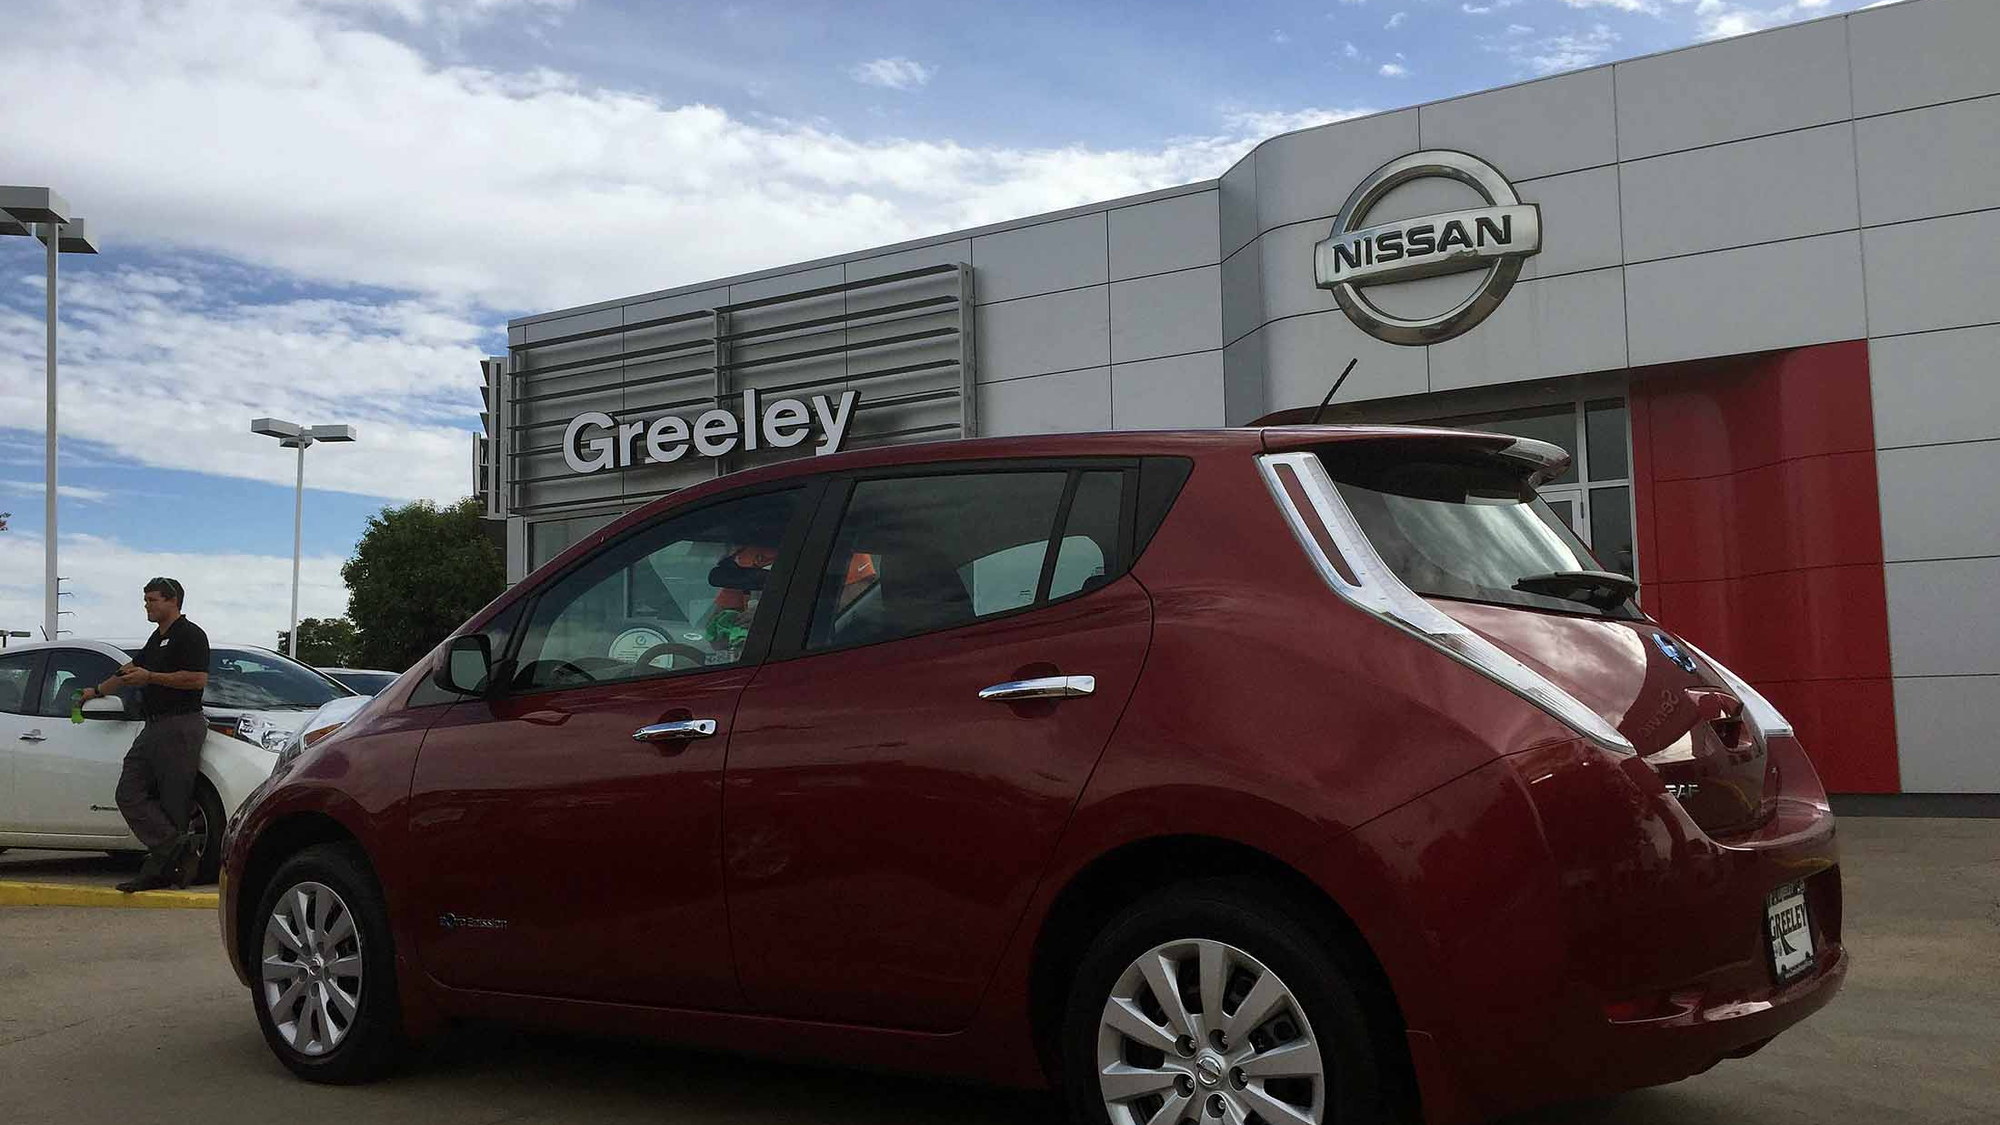 2015 Nissan Leaf, Denver, Colorado, Mar 2016  [photo: owner Andrew Ganz]